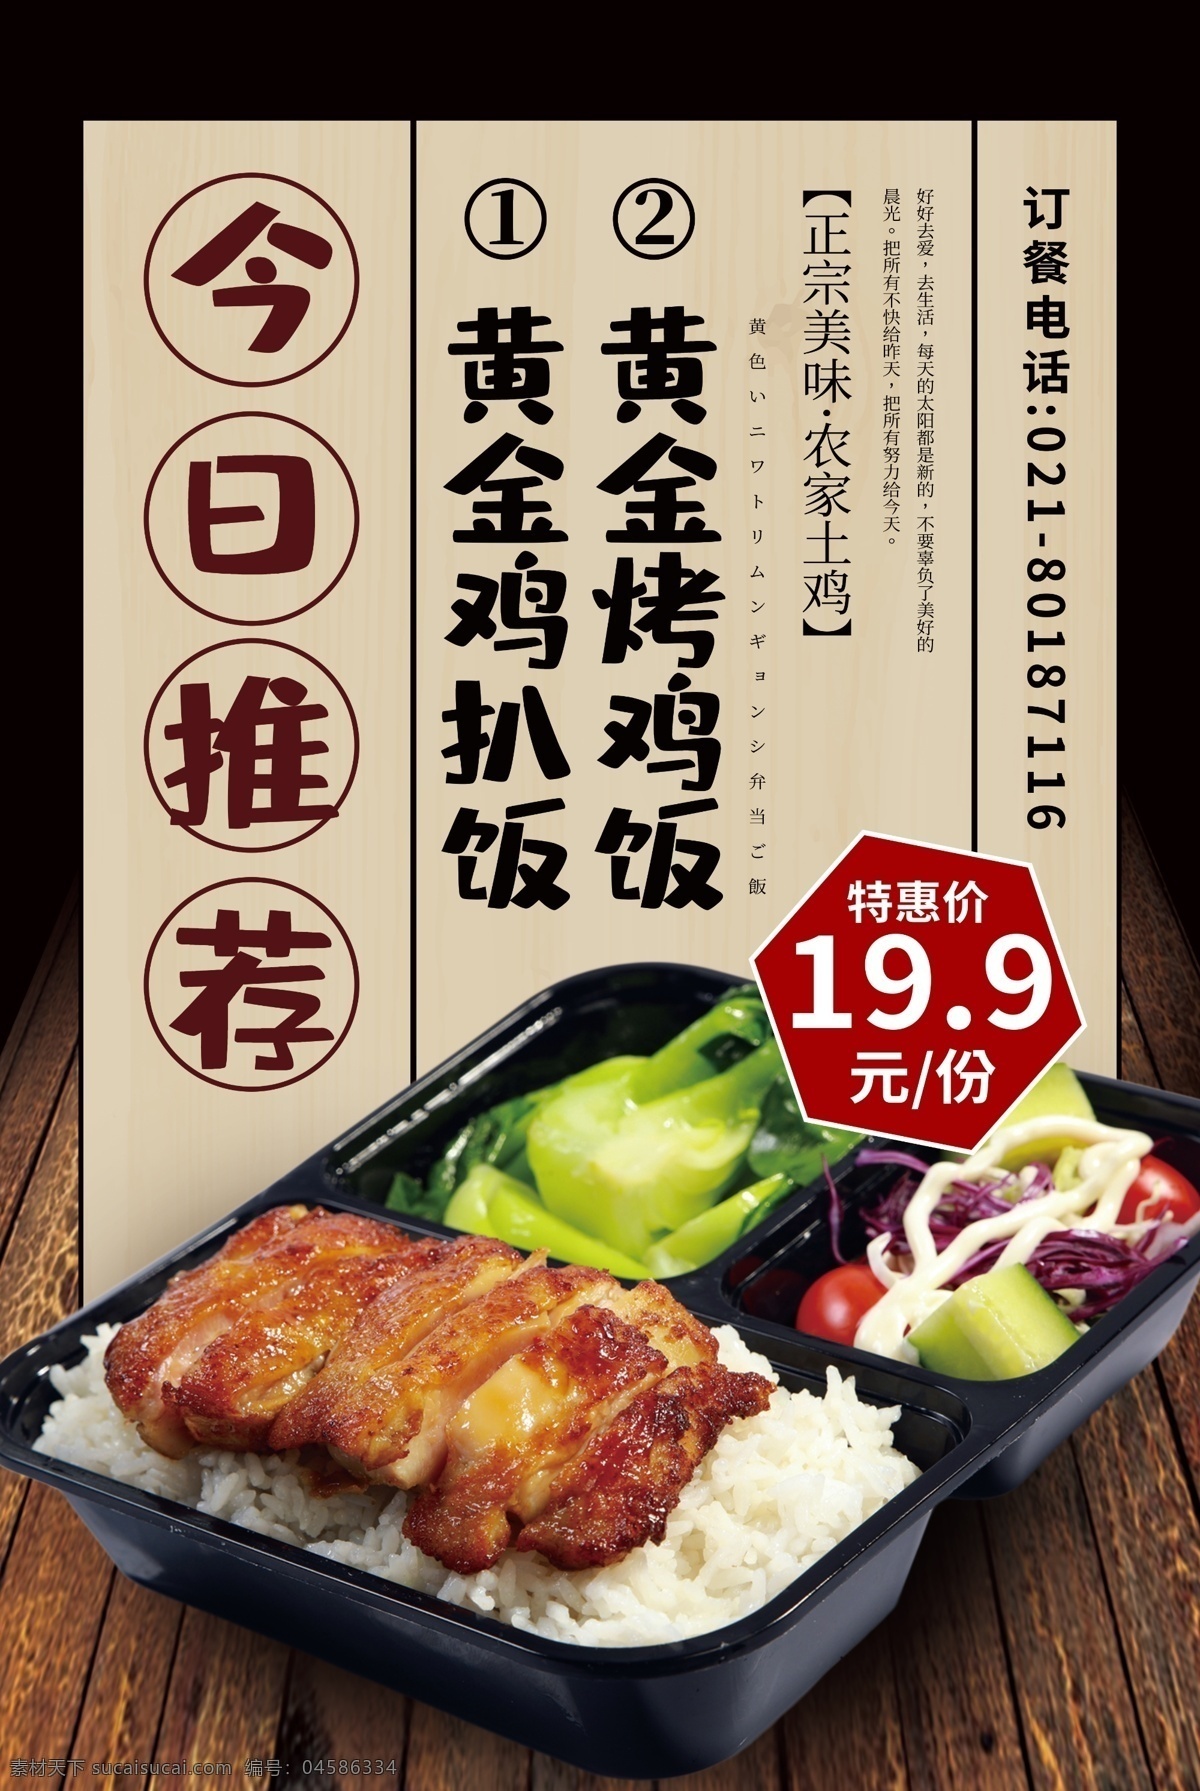 今日 推荐 美食 海报 日式料理美食 美食海报 日本 日式 料理 日和料理 盒饭 便当 外卖